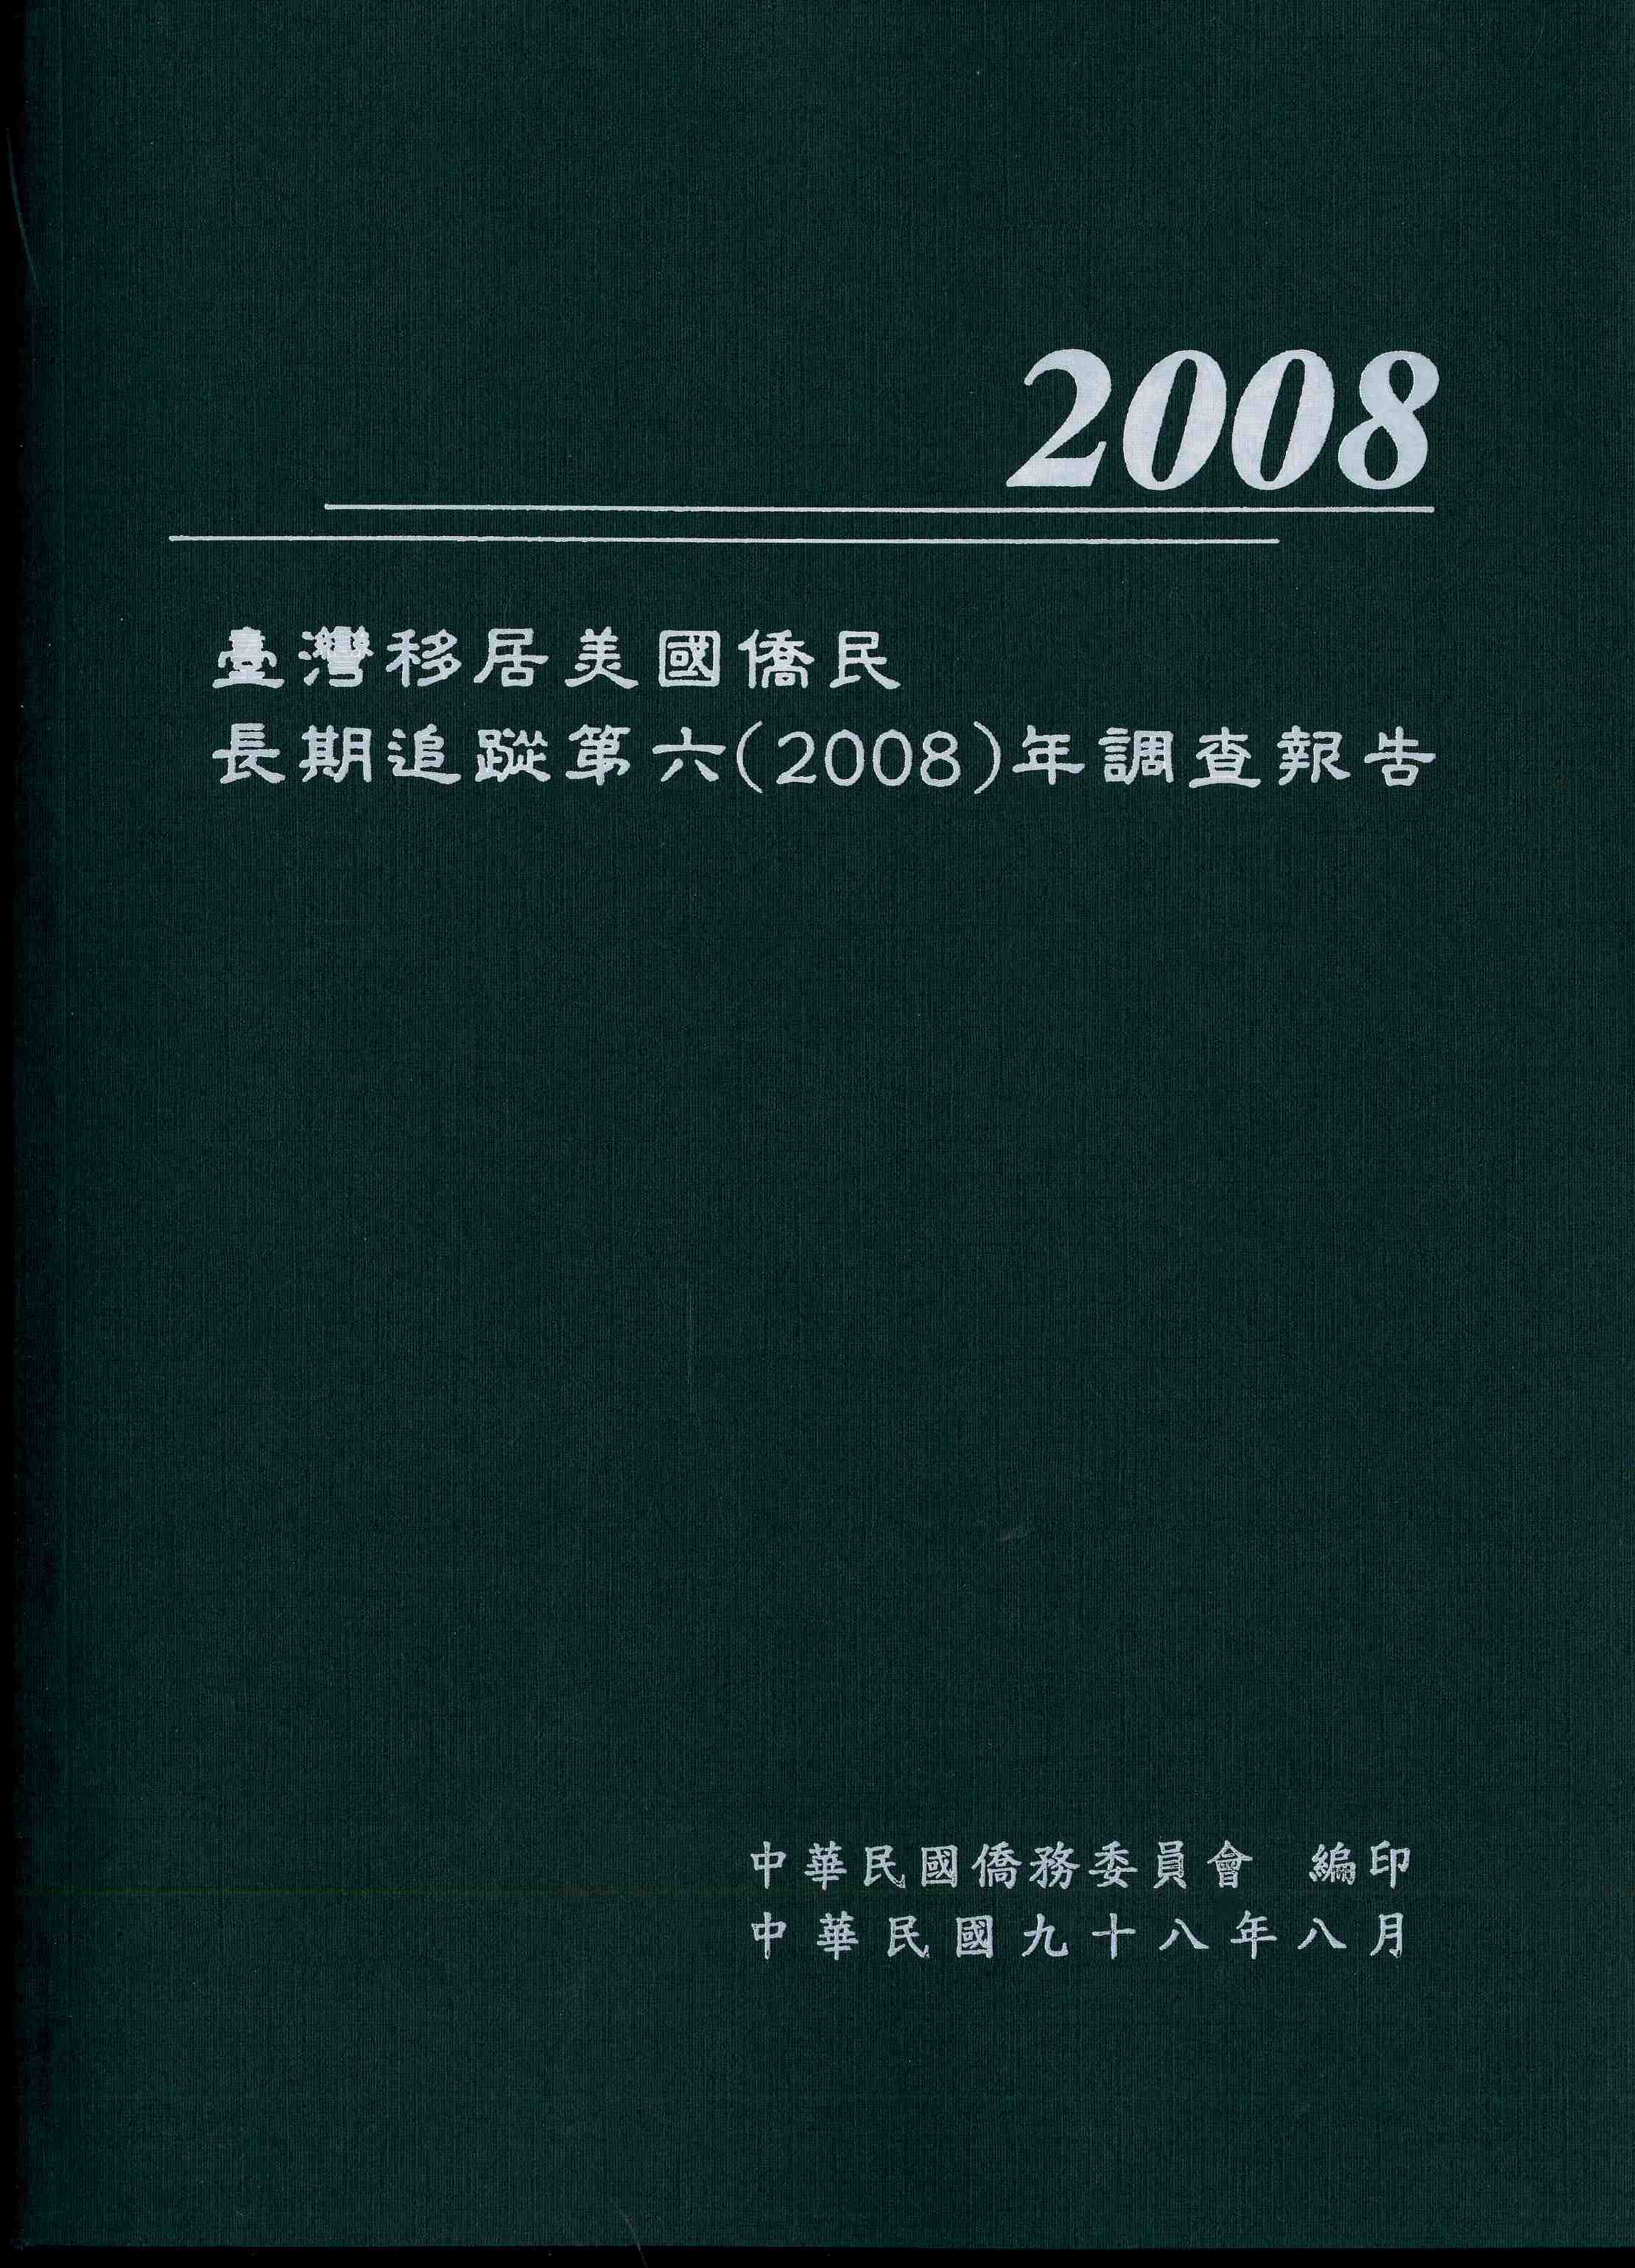 臺灣移居美國僑民長期追蹤第六（2008）年調查報告